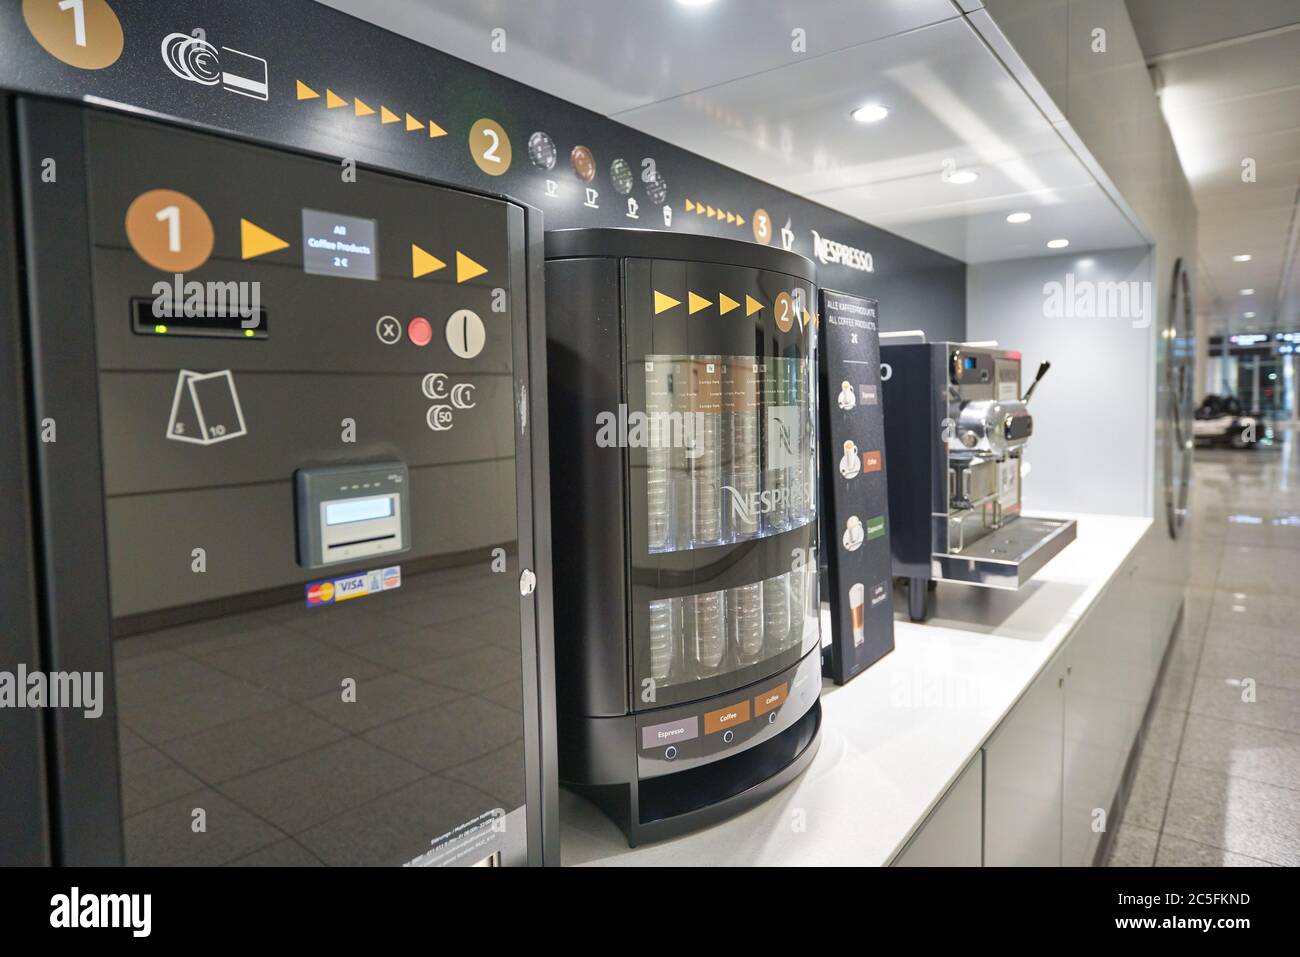 MUNICH, ALEMANIA - ALREDEDOR DE ENERO de 2020: Máquina de café Nespresso  vista en el aeropuerto de Munich Fotografía de stock - Alamy